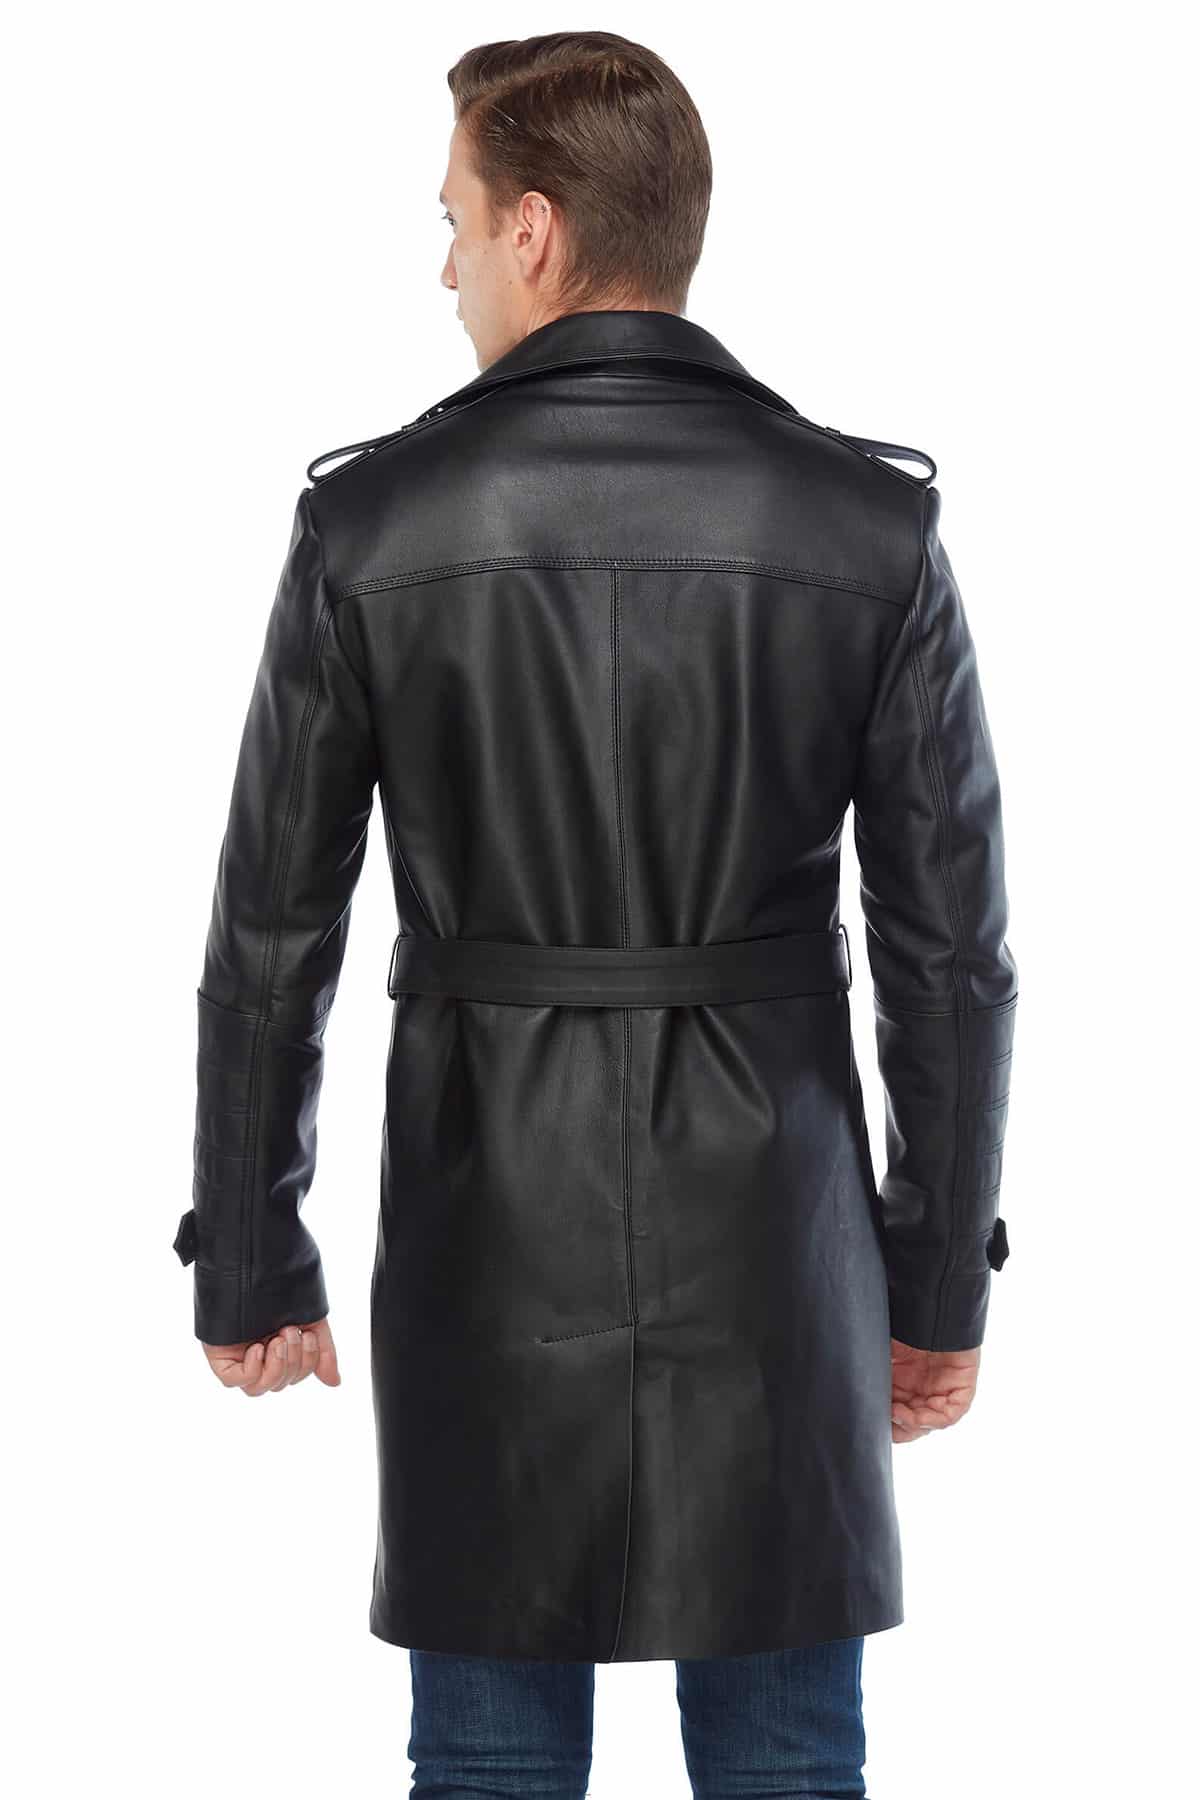 Daniel Genuine Leather Men’s Topcoat Black Back